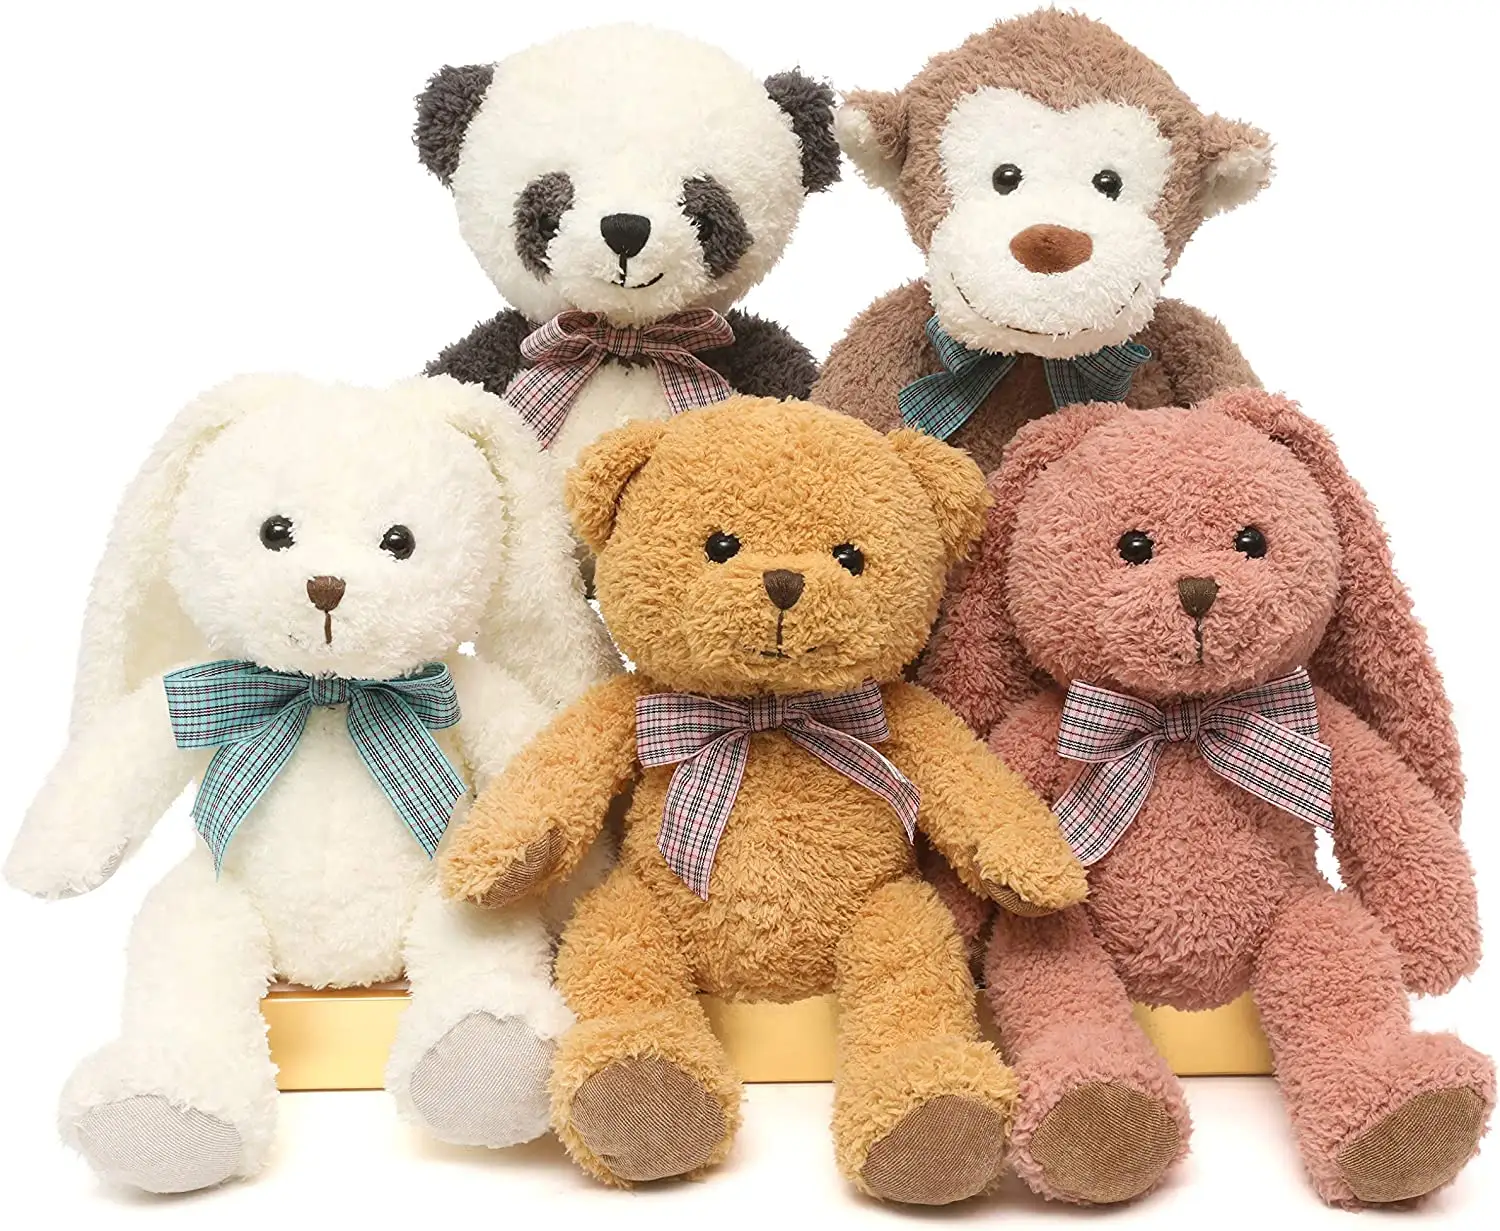 Yumuşak doldurulmuş hayvanlar peluş oyuncak ayı/maymun/Panda/tavşan oyuncak çocuklar için erkek kız, bir hediye olarak doğum günü/noel/Valentin